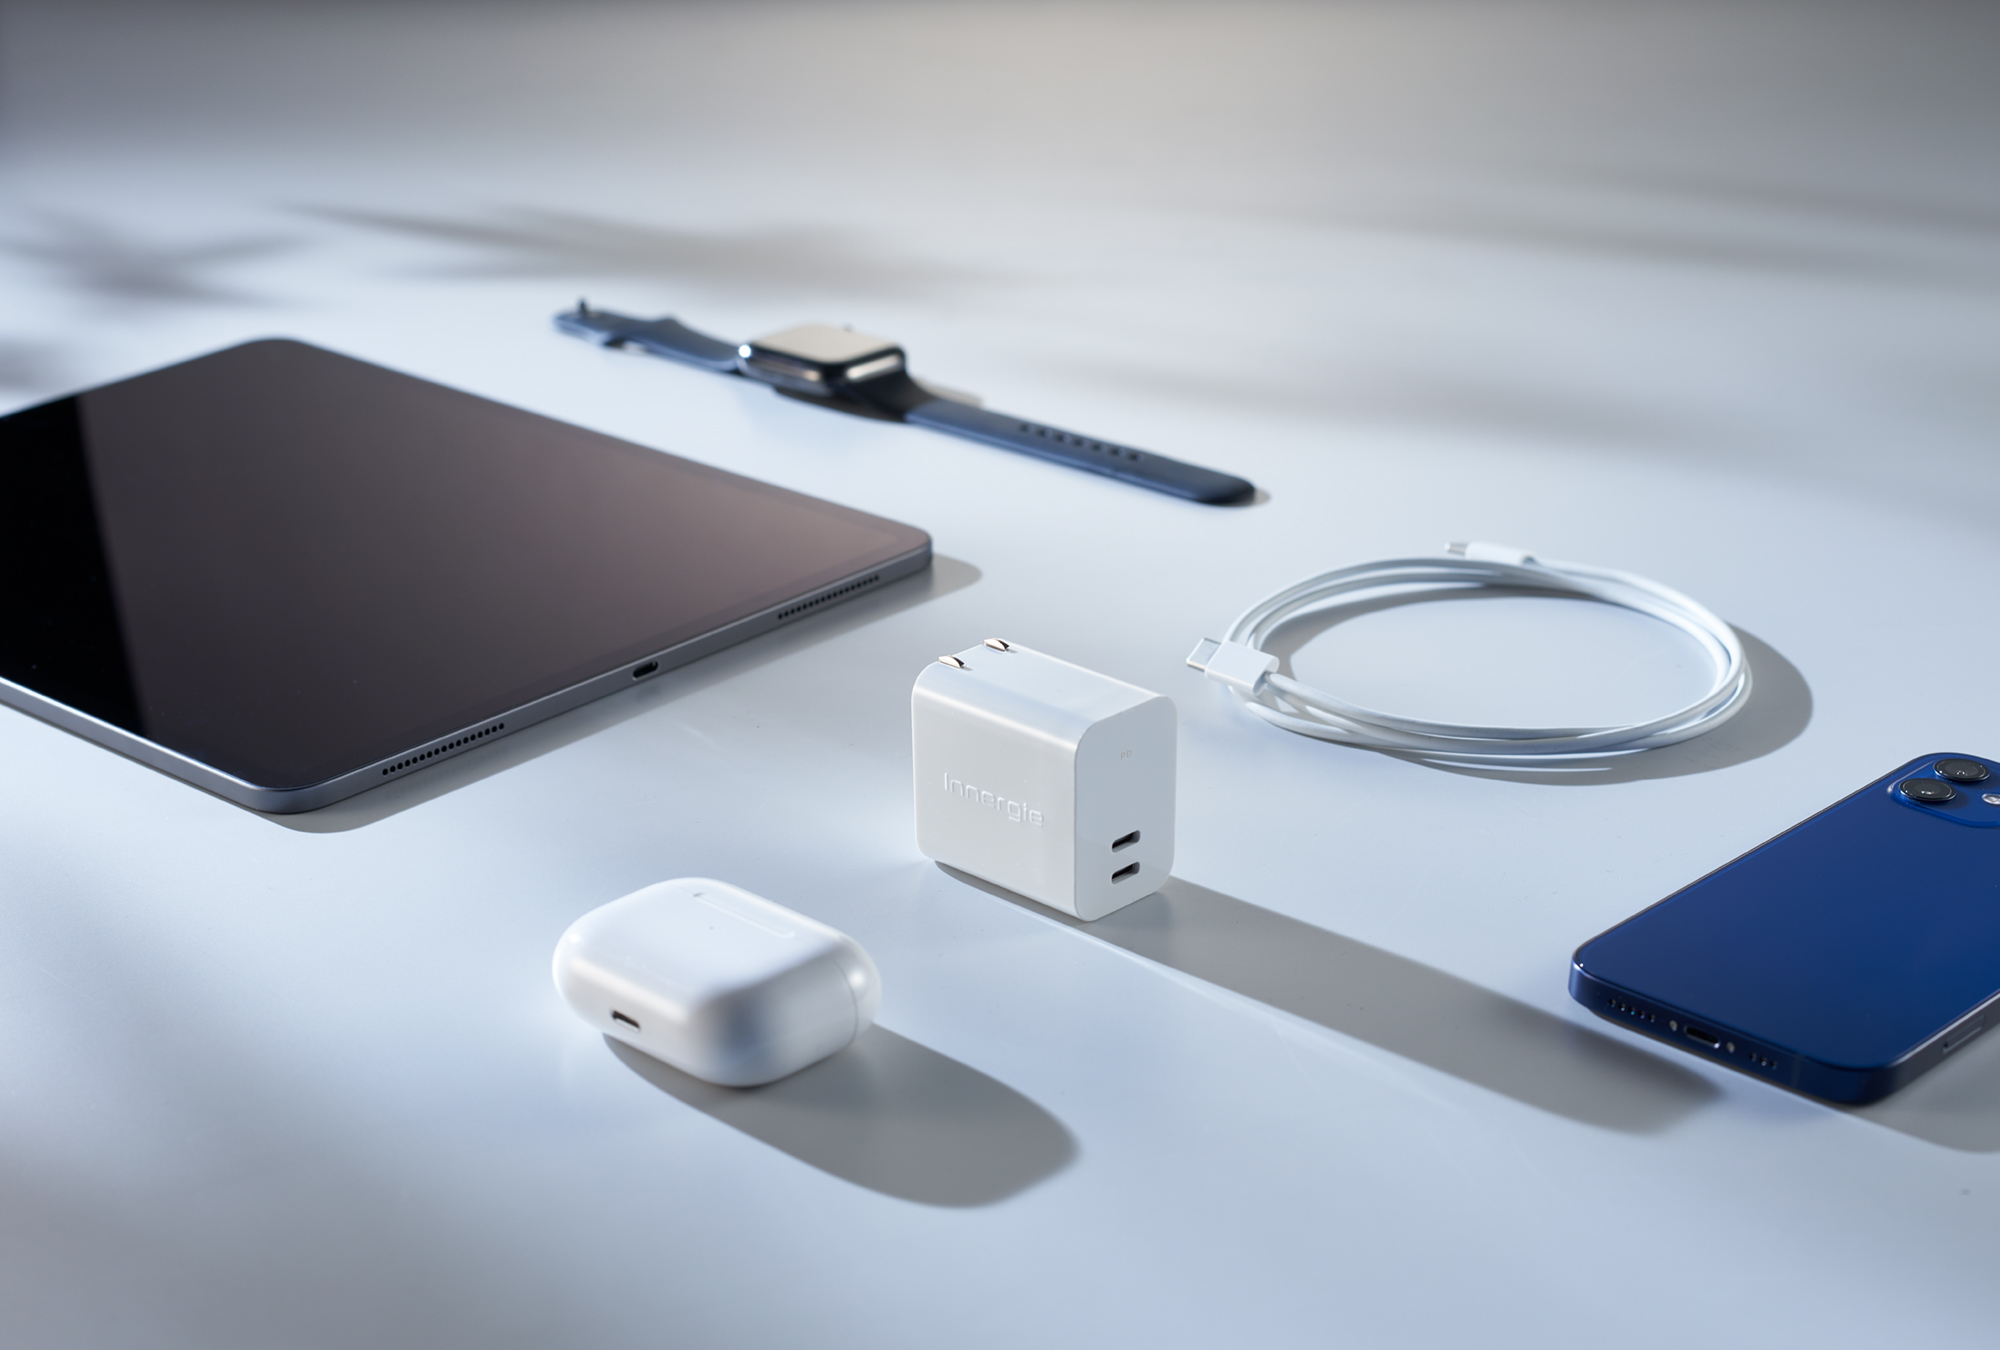 Apple 產品沒附充電器怎麼辦 Ipad充電器可與iphone共用嗎 Innergie 台灣